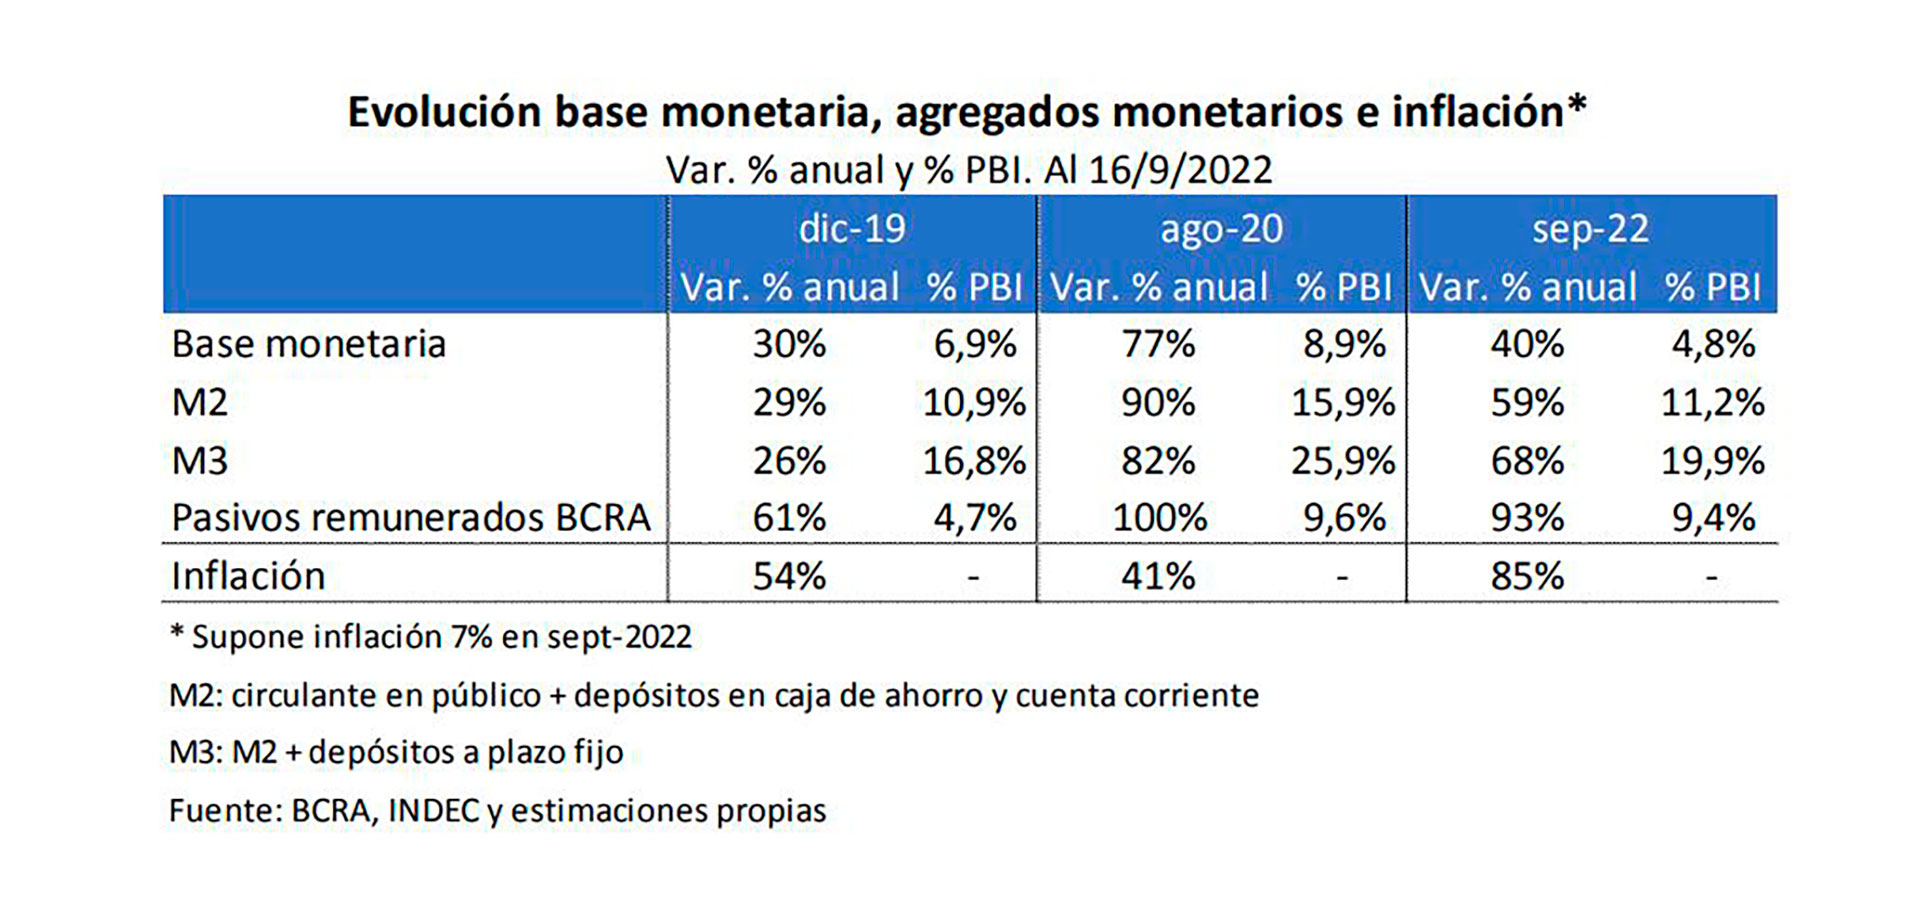 Un cuadro del informe precisa el ritmo de la inflación y las variables monetarias en 2019, 2020 y 2022